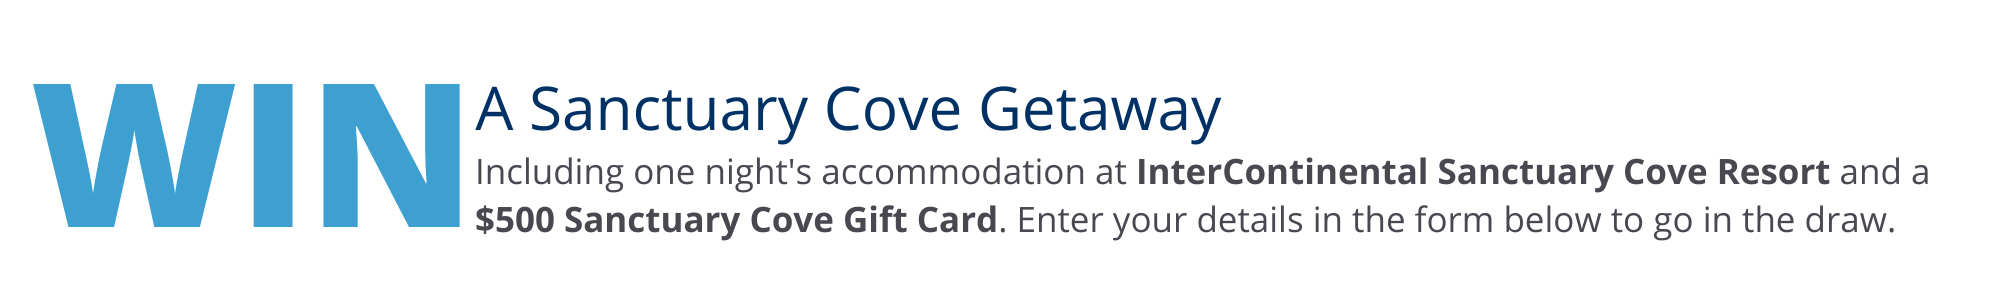 Win a Sanctuary Cove Getaway